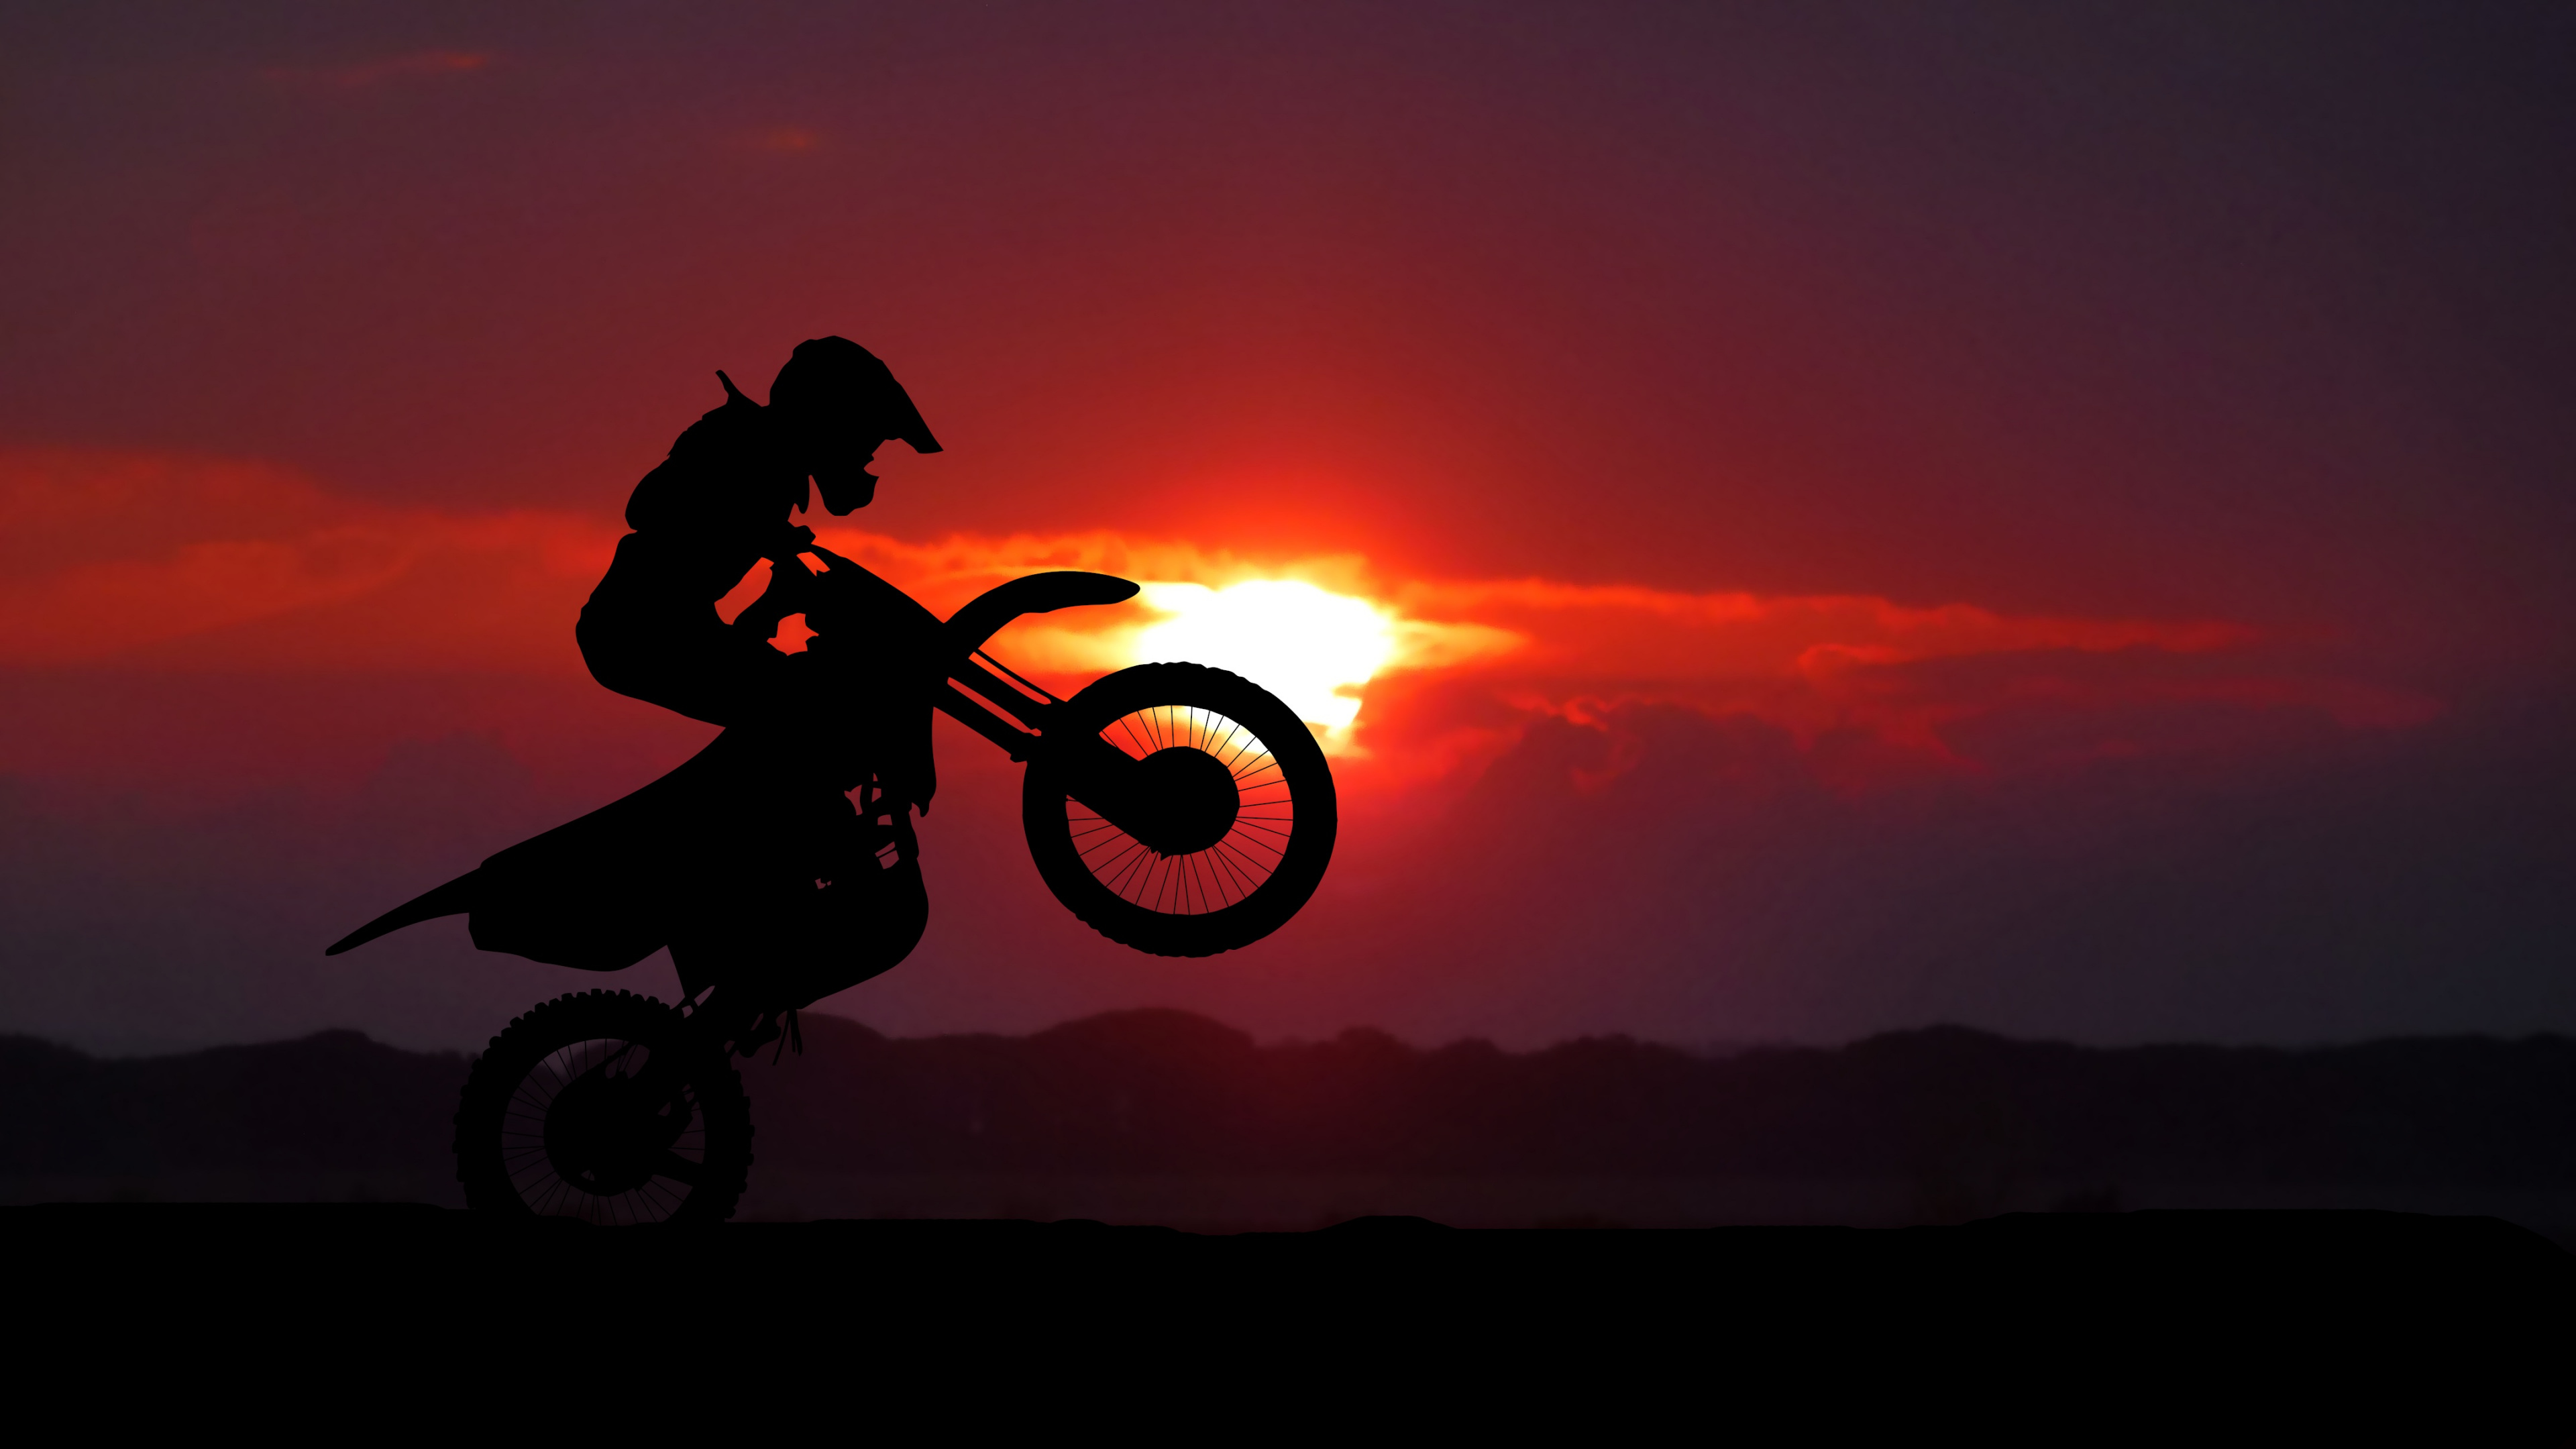 摩托车运动, 骑摩托车特技, 越野, 自由式的摩托车越野赛, 摩托车越野赛 壁纸 3840x2160 允许